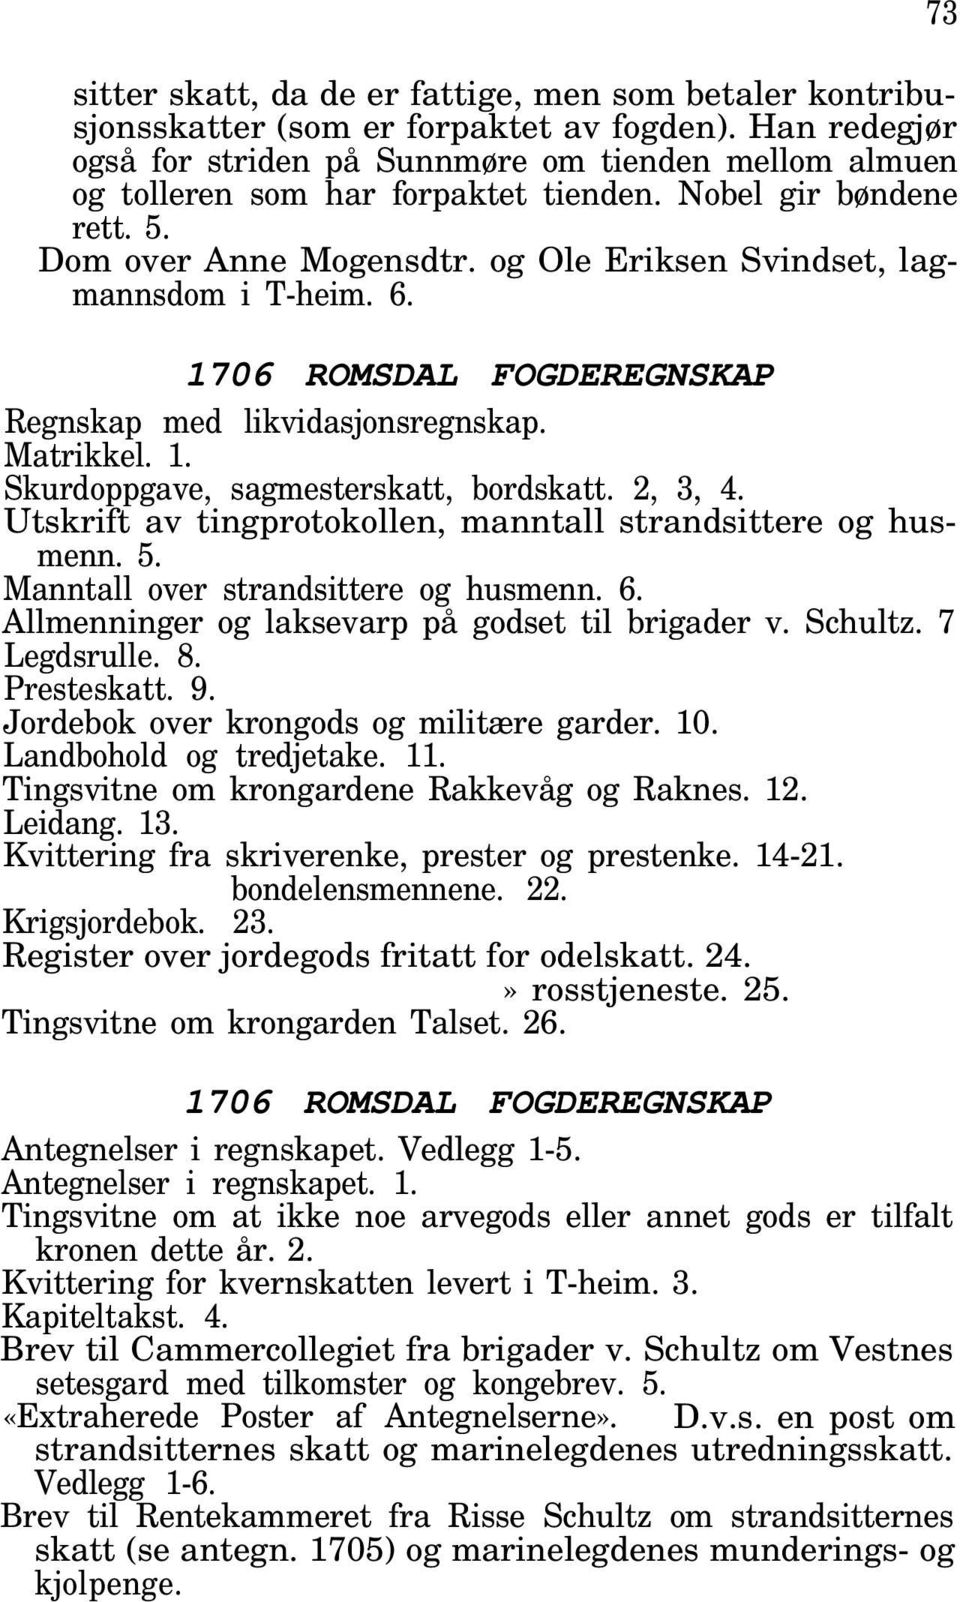 og Ole Eriksen Svindset, lagmannsdom i T-heim. 6. 1706 ROMSDAL FOGDEREGNSKAP Regnskap med likvidasjonsregnskap. Skurdoppgave, sagmesterskatt, bordskatt. 2, 3, 4.